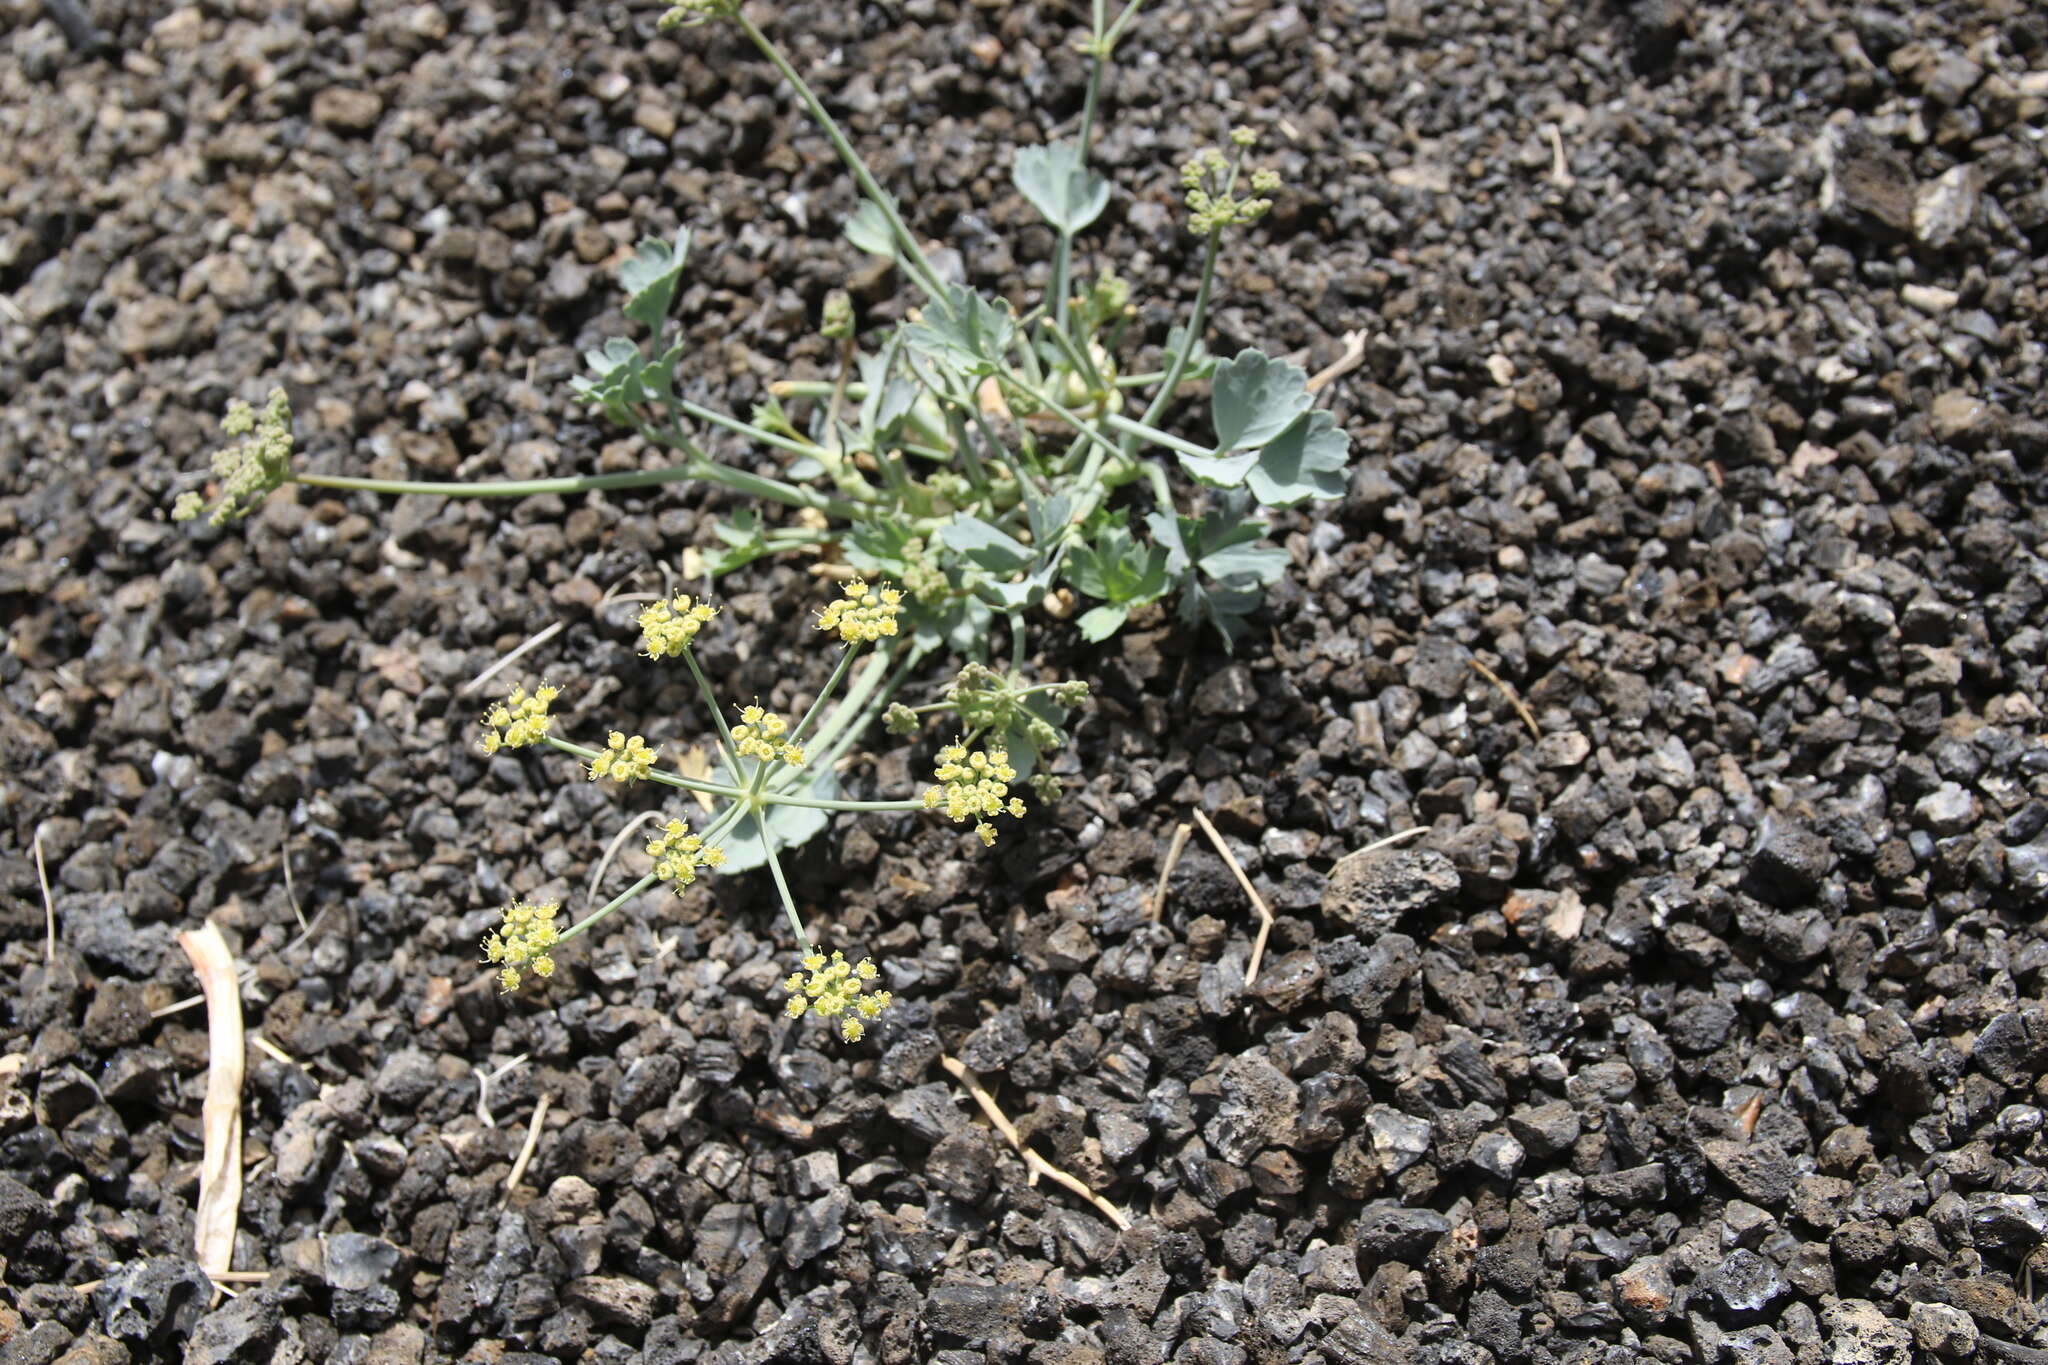 Image of Ducrosia flabellifolia Boiss.